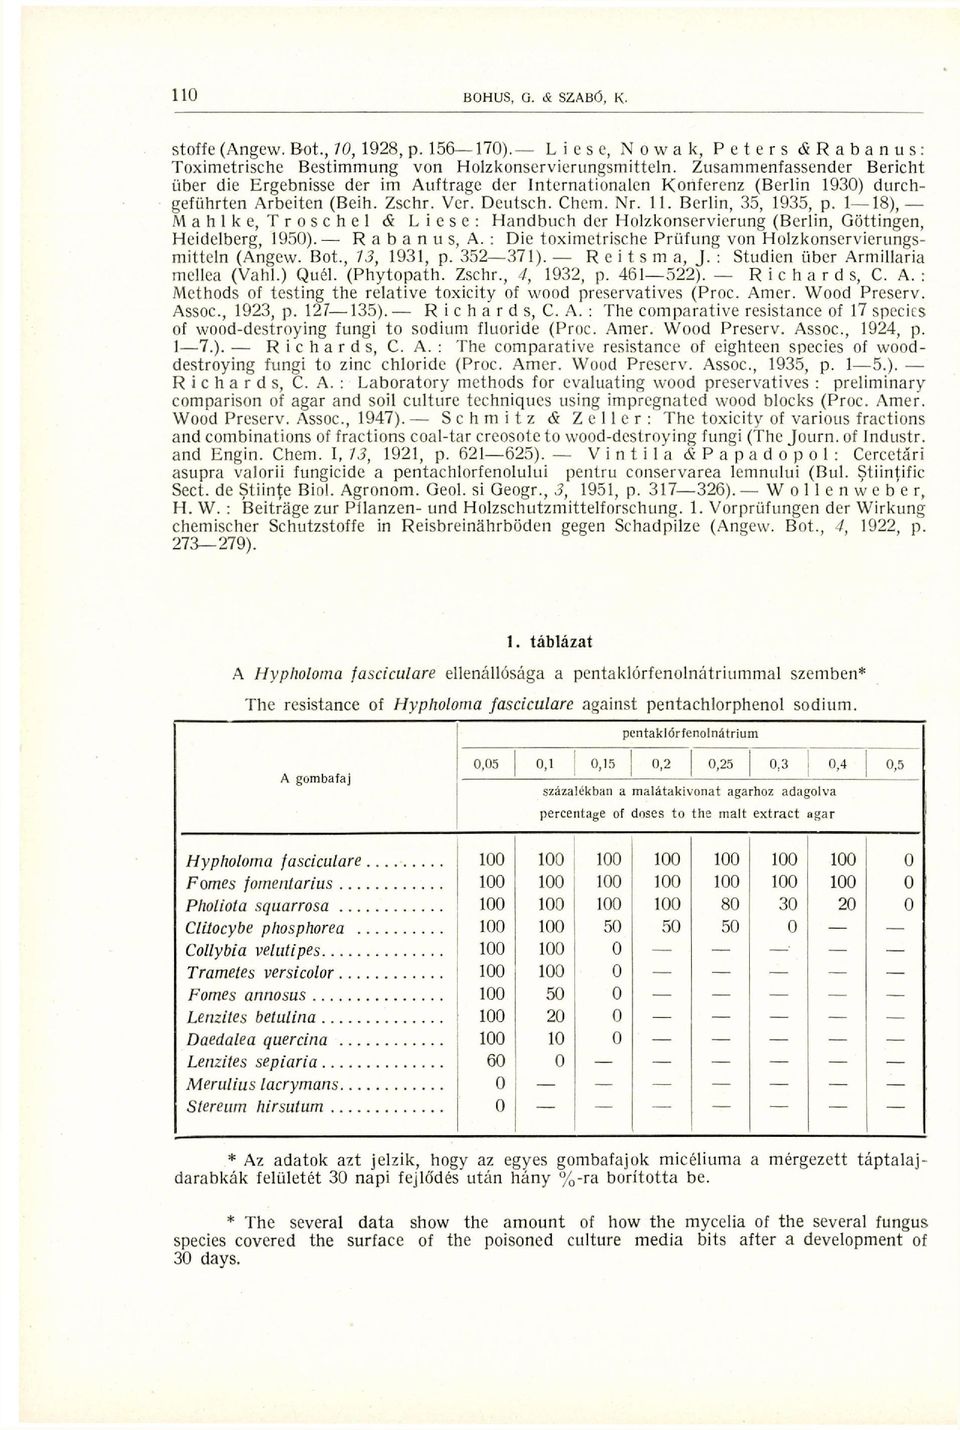 1 18), Mahlke, Troschel <& Liese: Handbuch der Holzkonservicrung (Berlin, Göttingen, Heidelberg, 1950). Rabanus, A.; Die toximetrische Prüfung von Holzkonservierungsmitteln (Angew. Bot., 13, 1931, p.